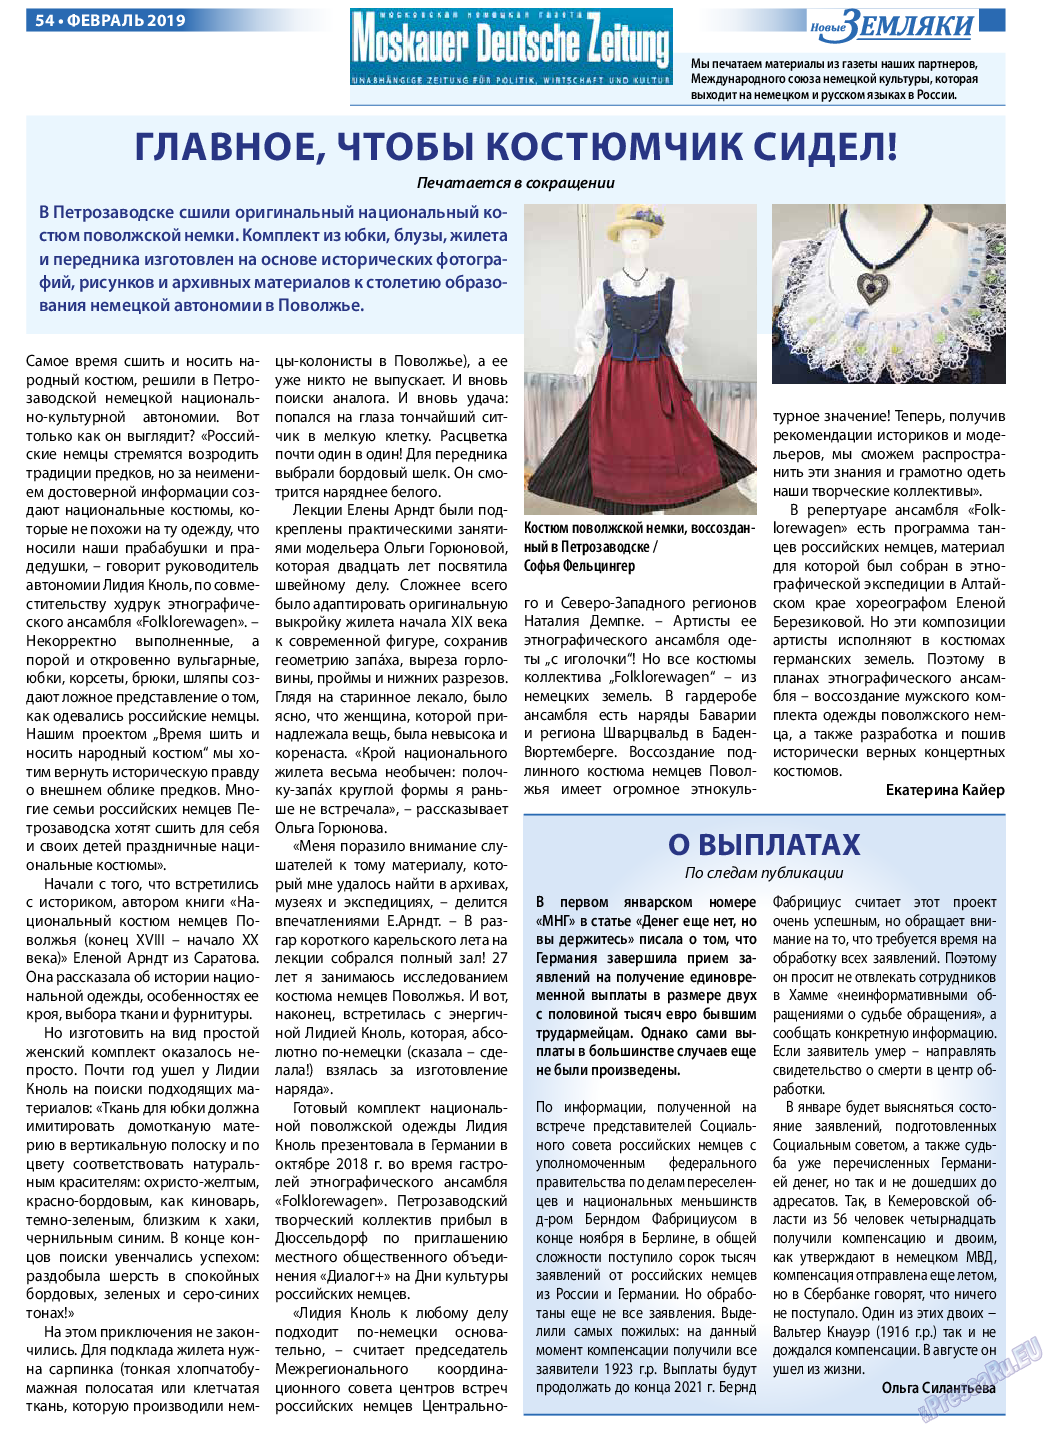 Новые Земляки (газета). 2019 год, номер 2, стр. 54